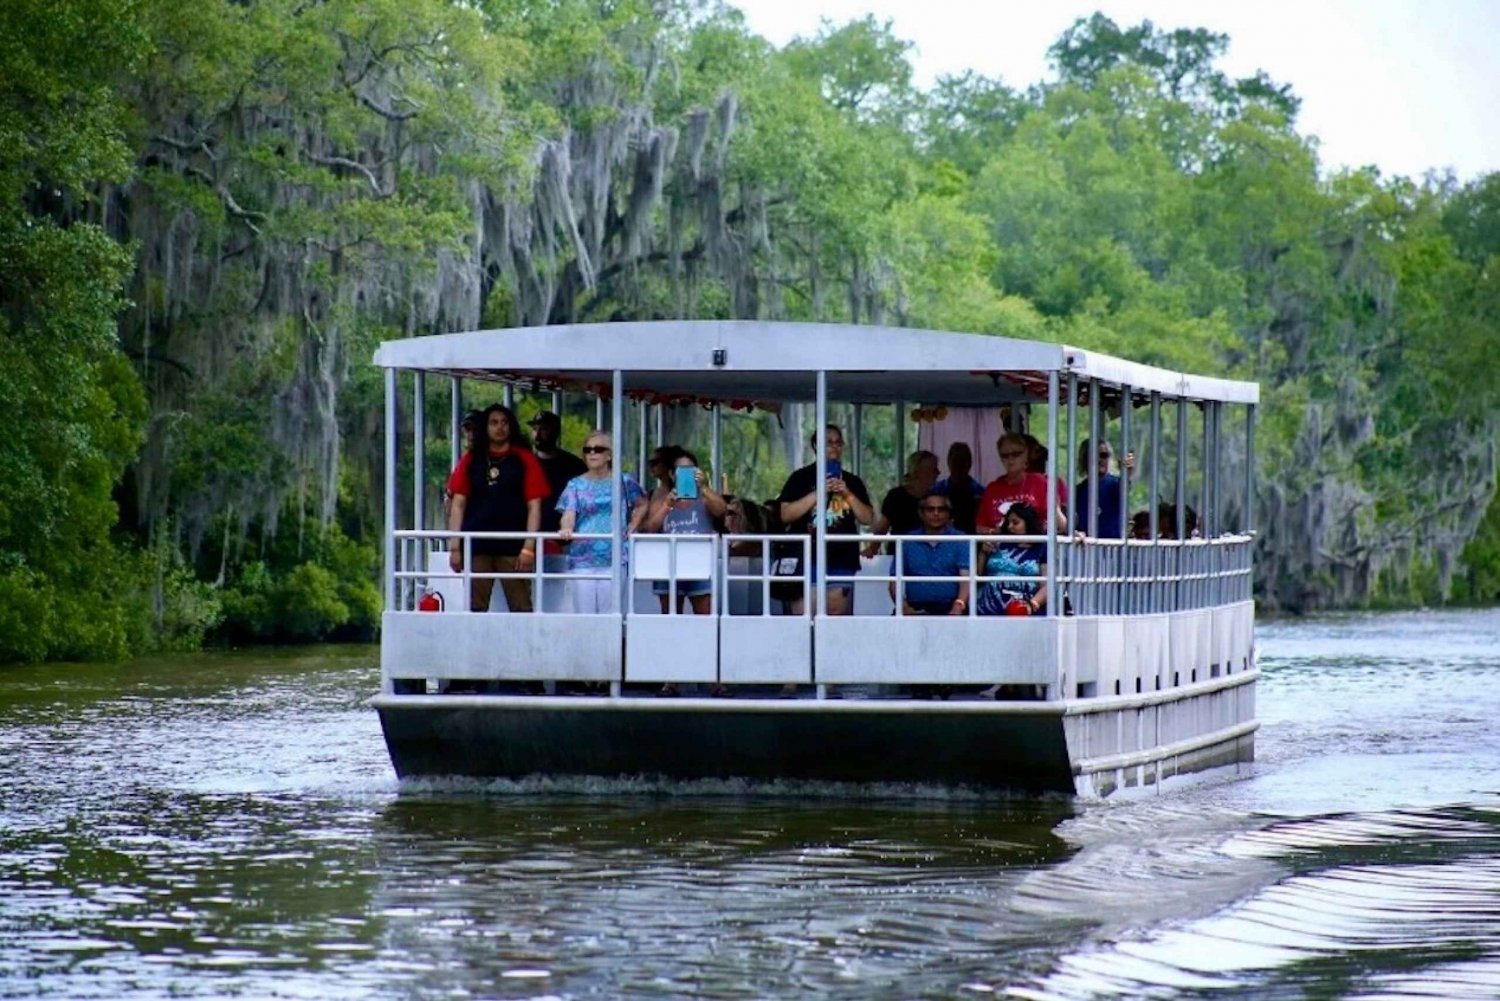 Nova Orleans: passeio pelo pântano em barco pontão coberto